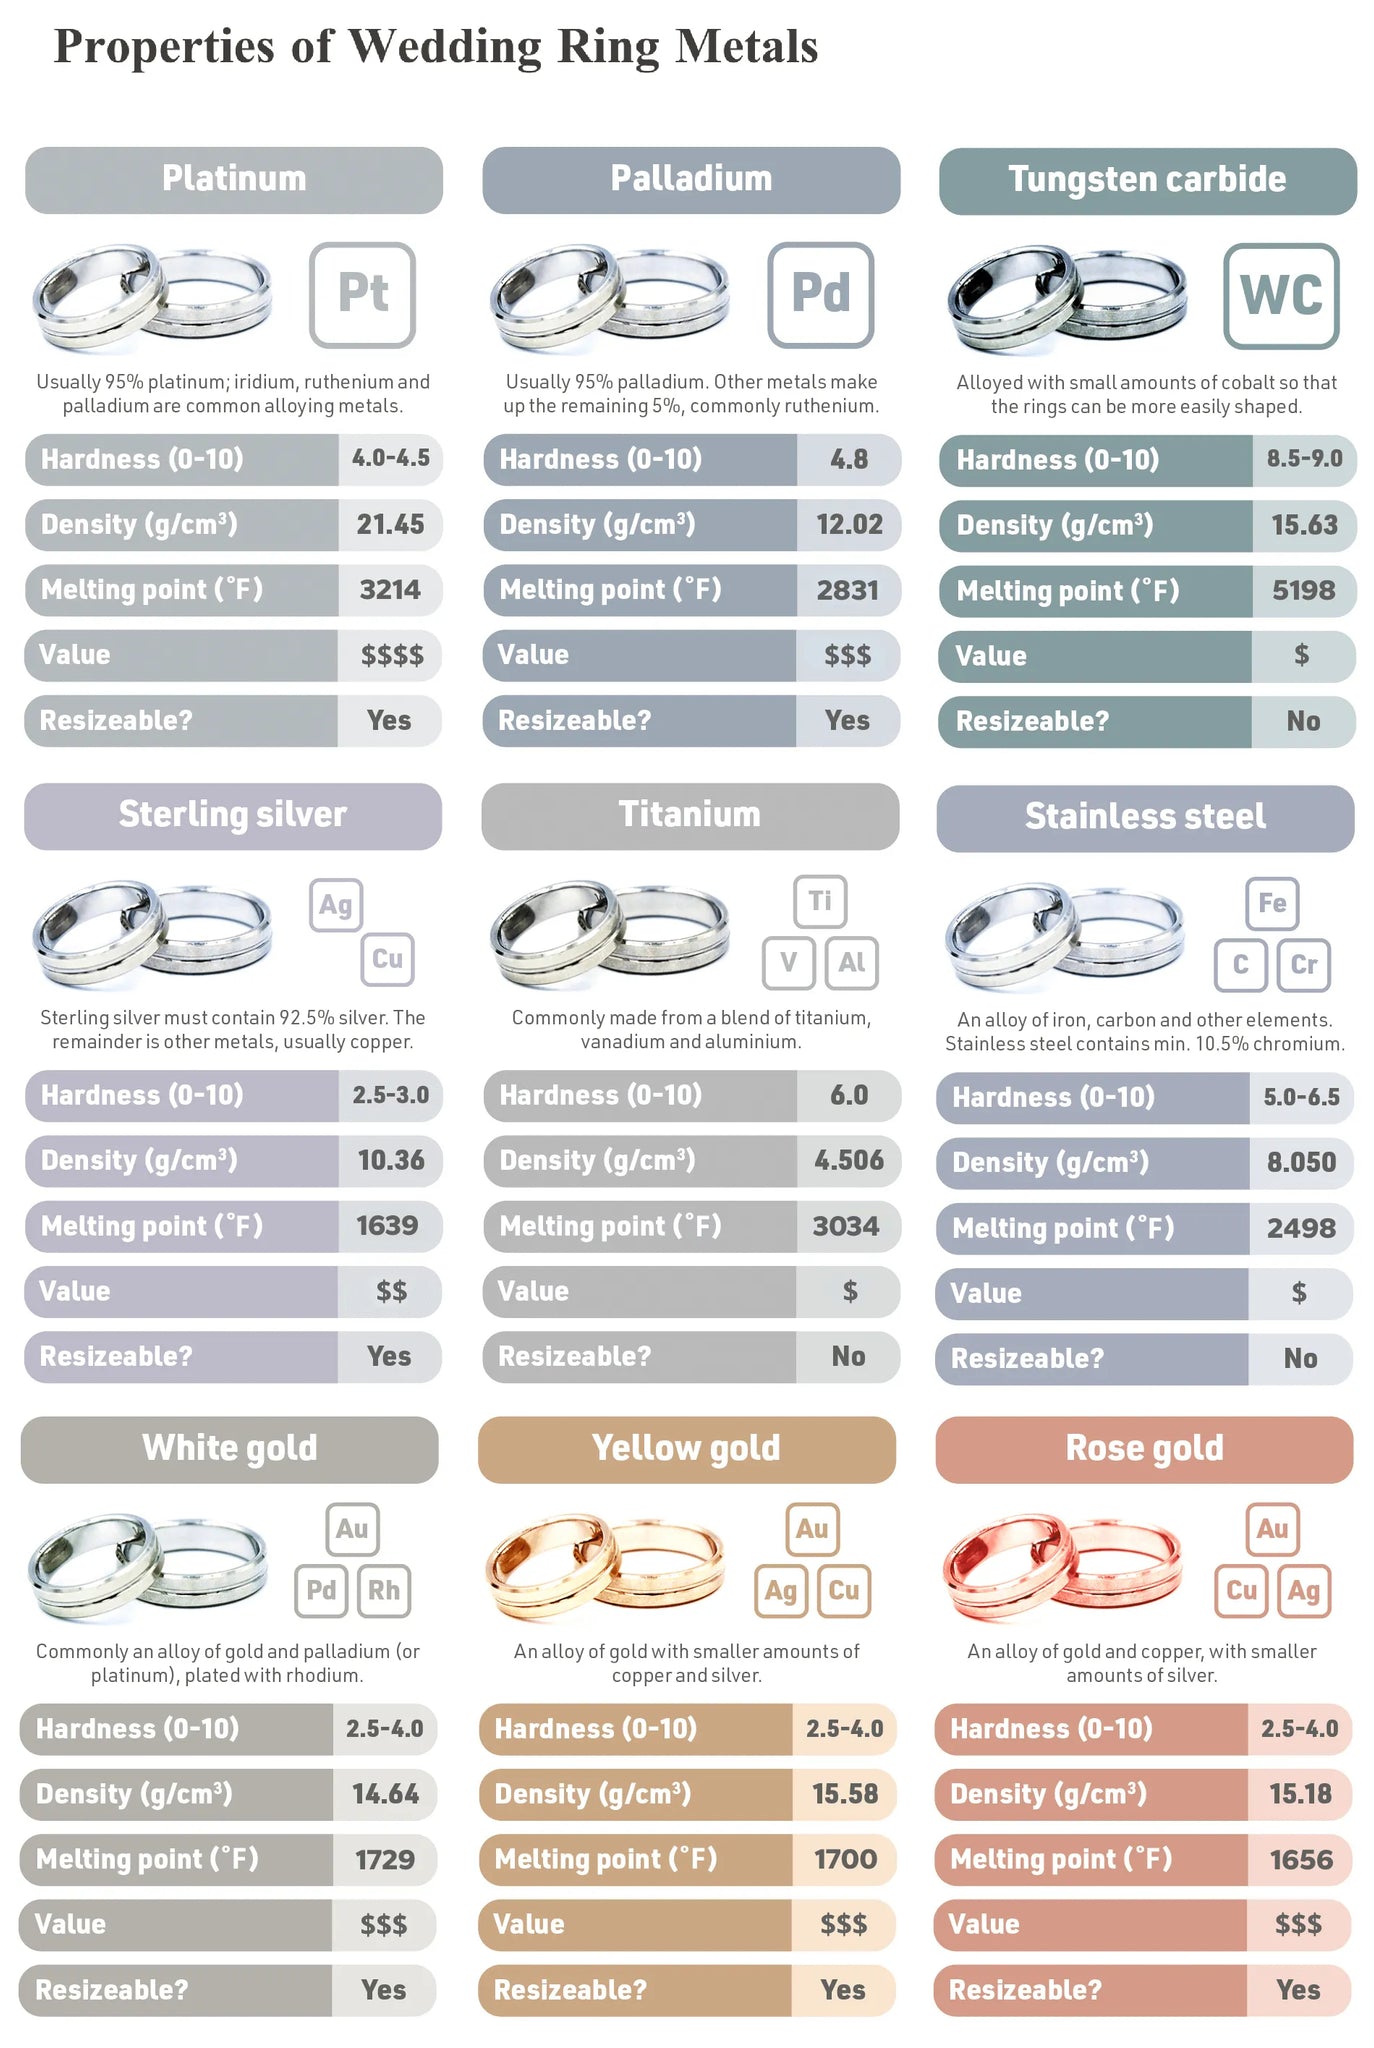 Properties of Wedding Ring Metals Comparison